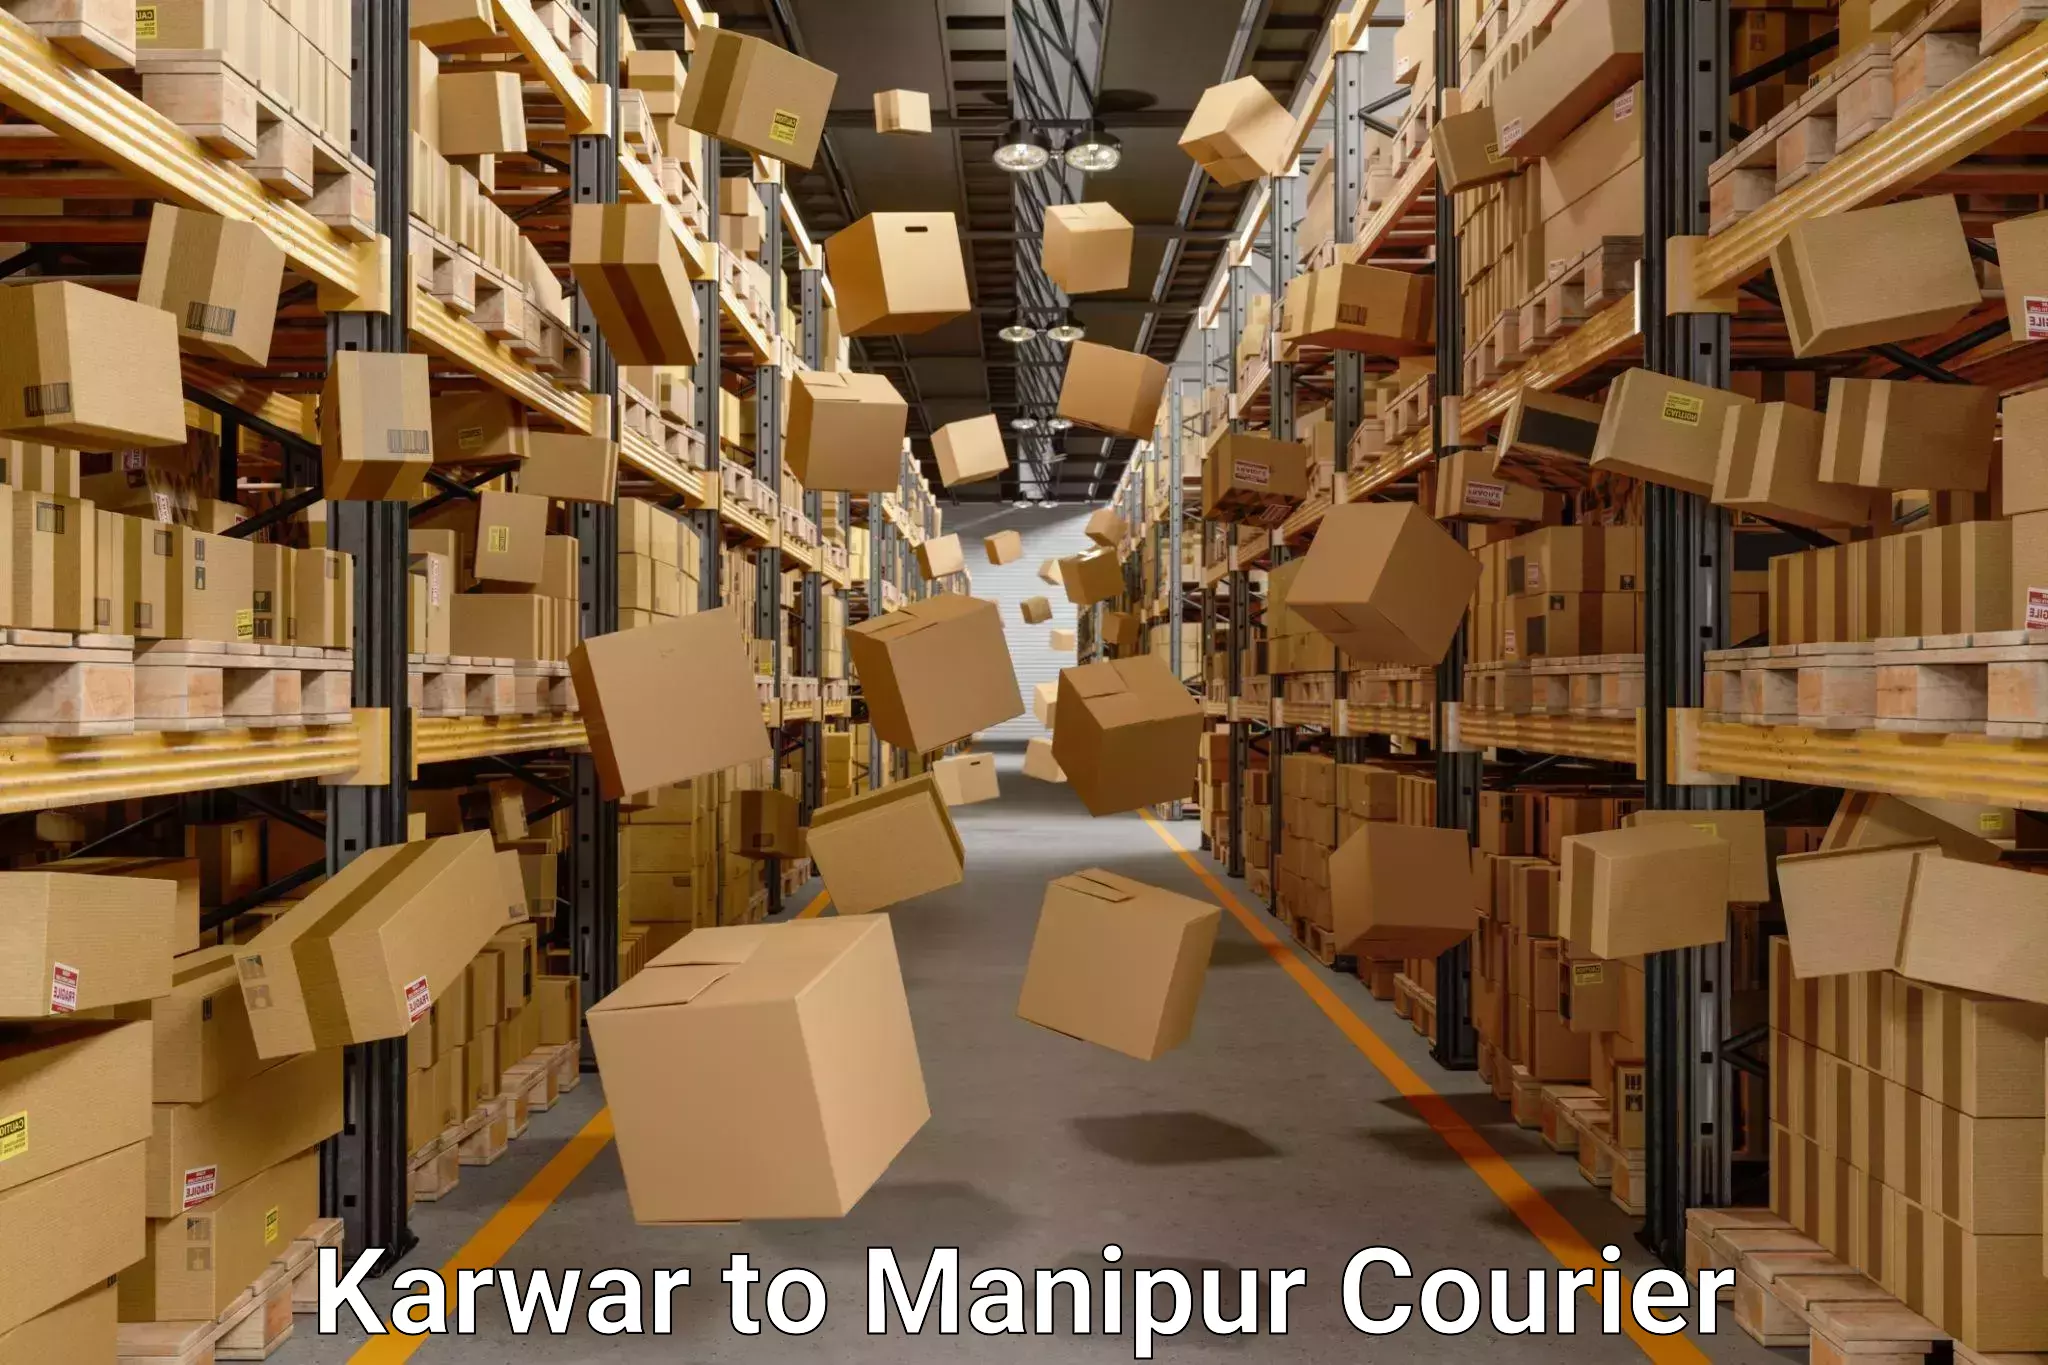 Household moving experts Karwar to Kanti